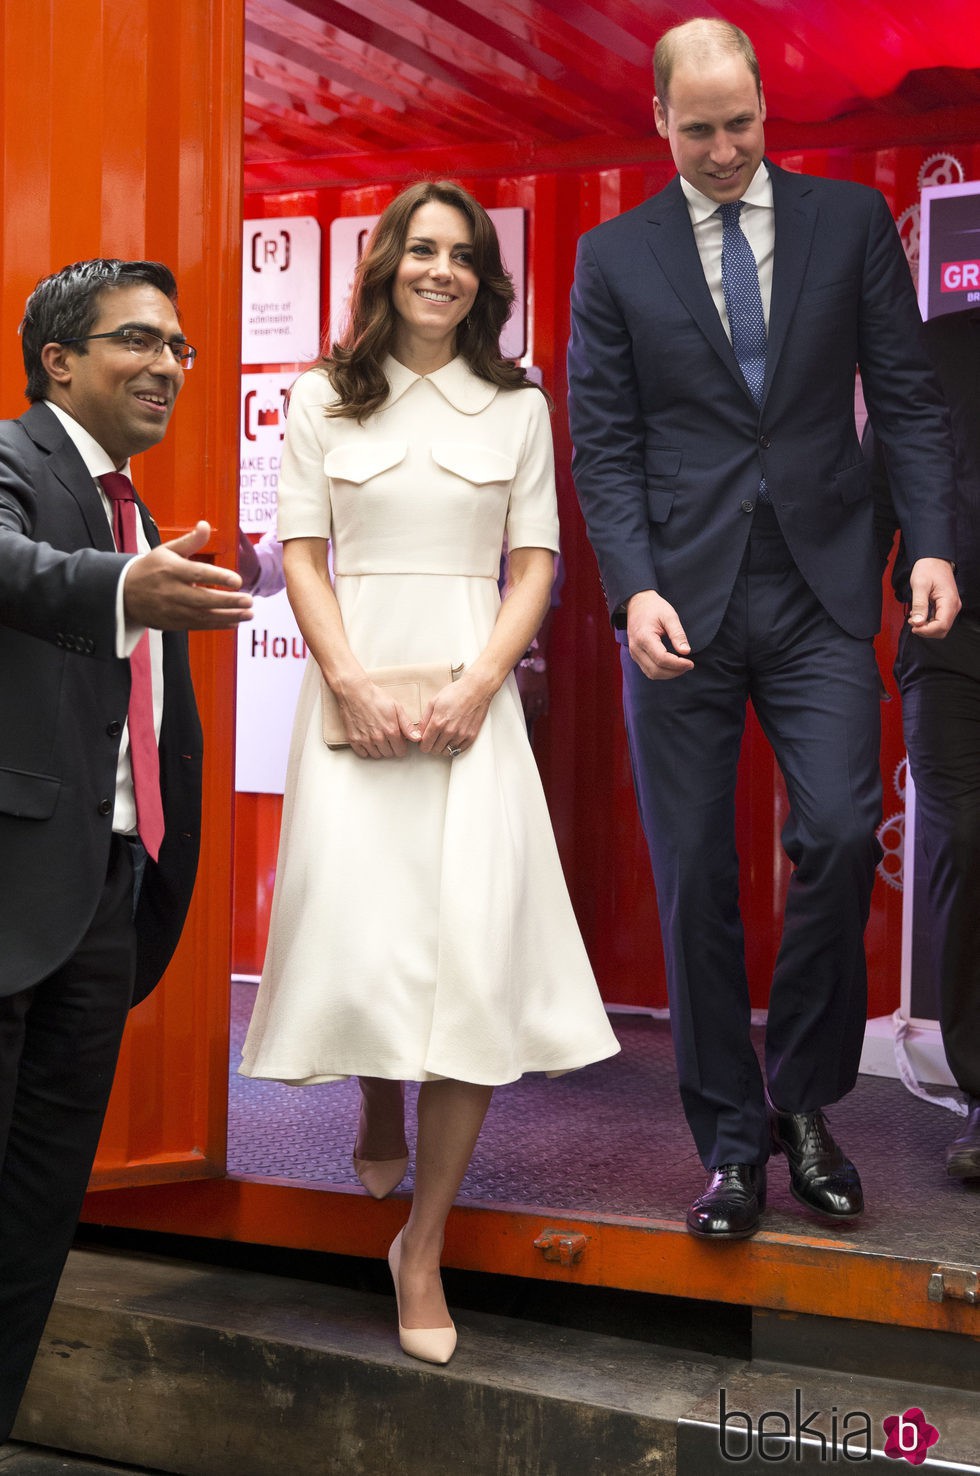 Duques de Cambridge reunidos en la embajada británica en su viaje a la India